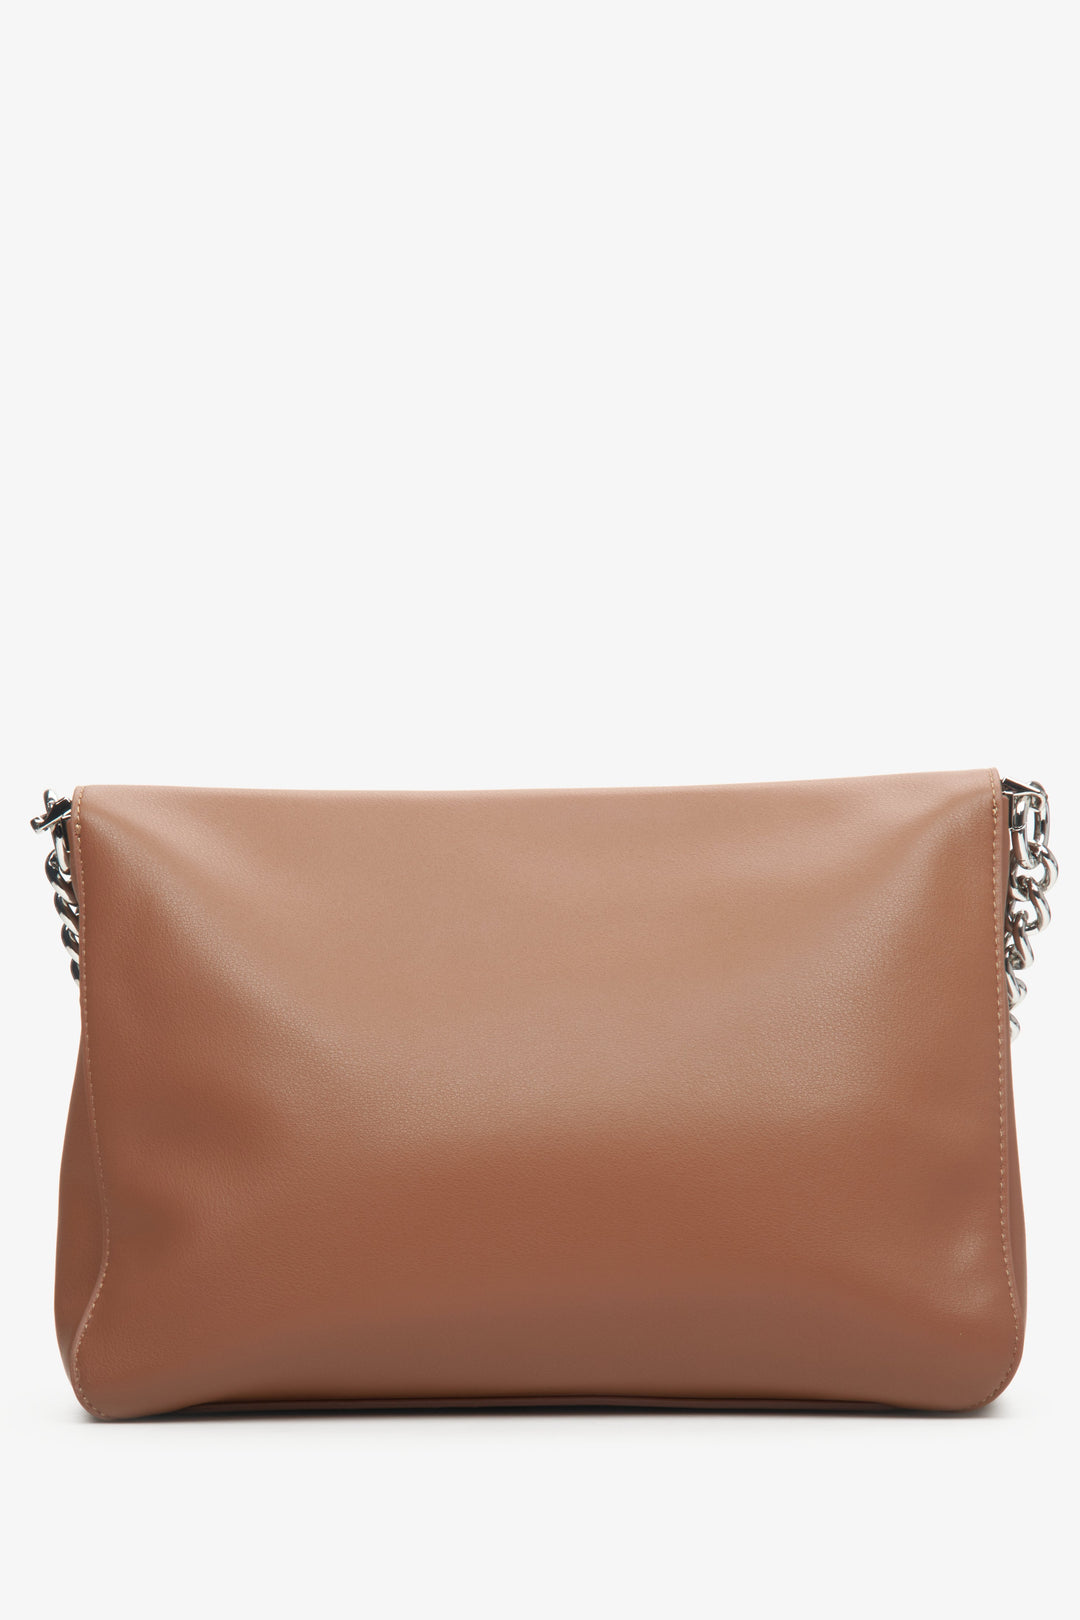 Skórzana torebka listonoszka damska w kolorze brązowym Estro z łańcuszkiem - tył modelu.